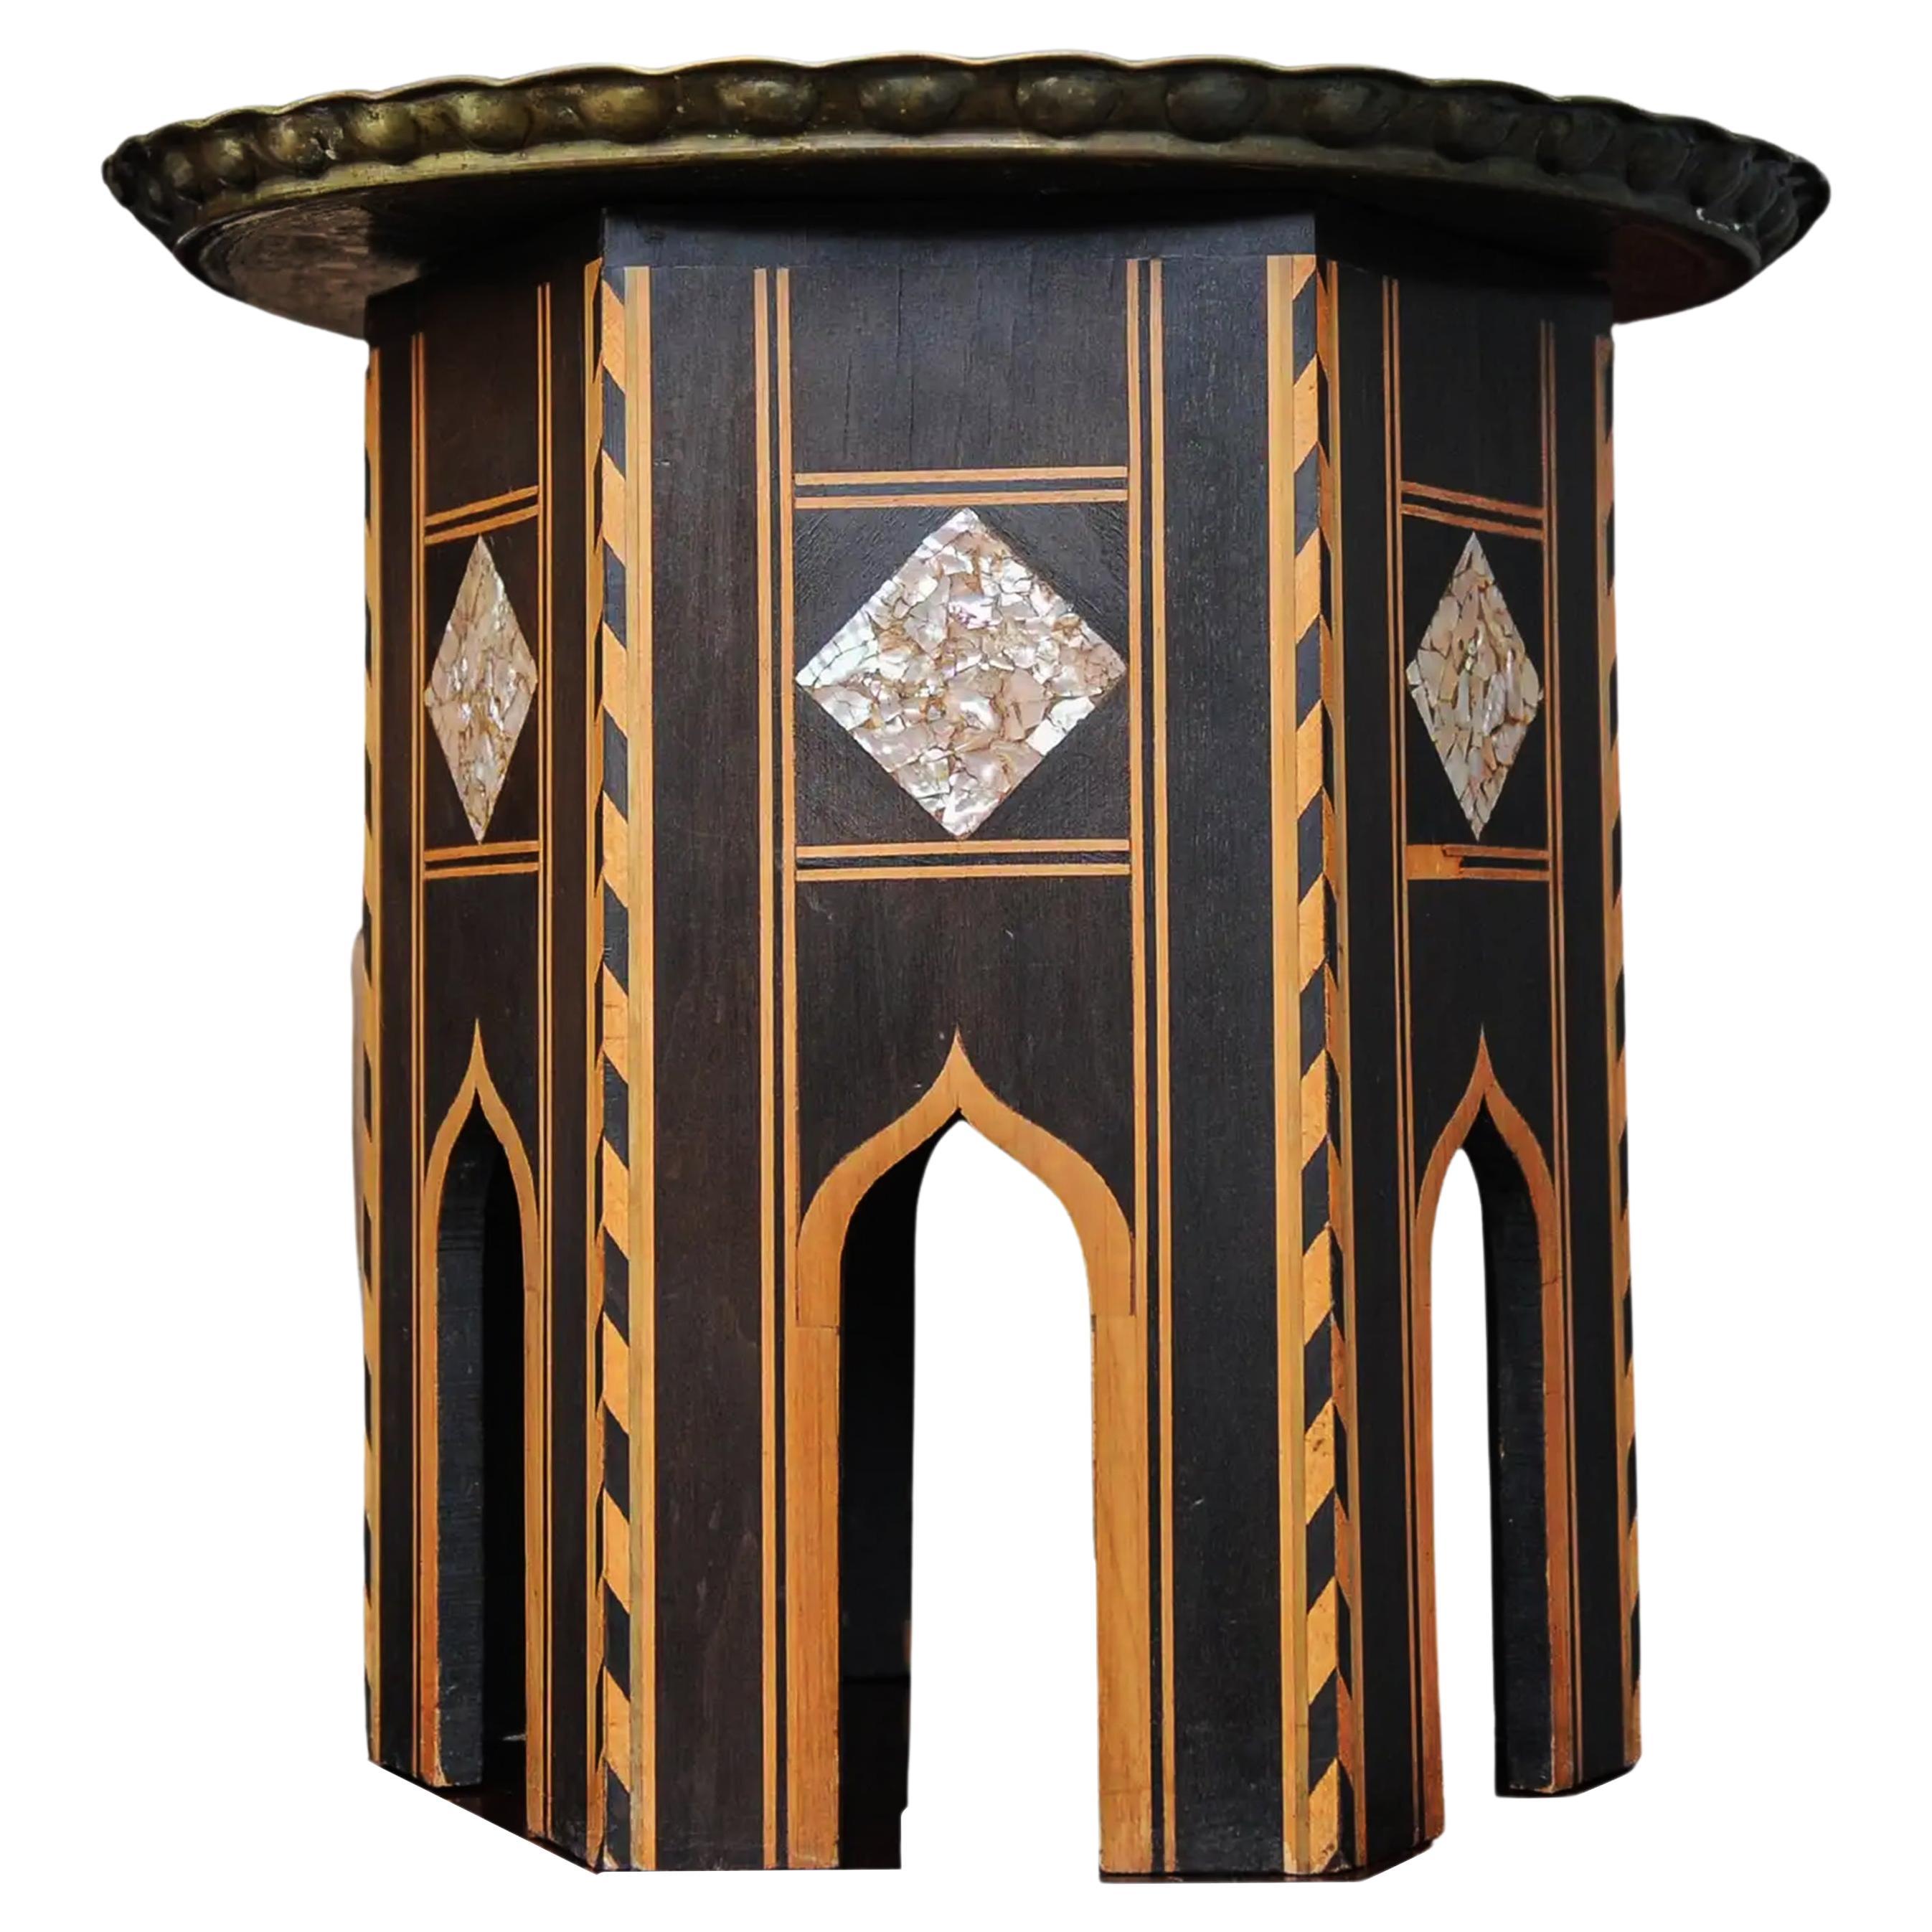 Table à thé syrienne ébonisée avec plateau amovible à bordures en croûte de tarte décorées en laiton

Hauteur totale 51cm
Largeur de la base 41cm
Plateau en laiton Diamètre 58cm